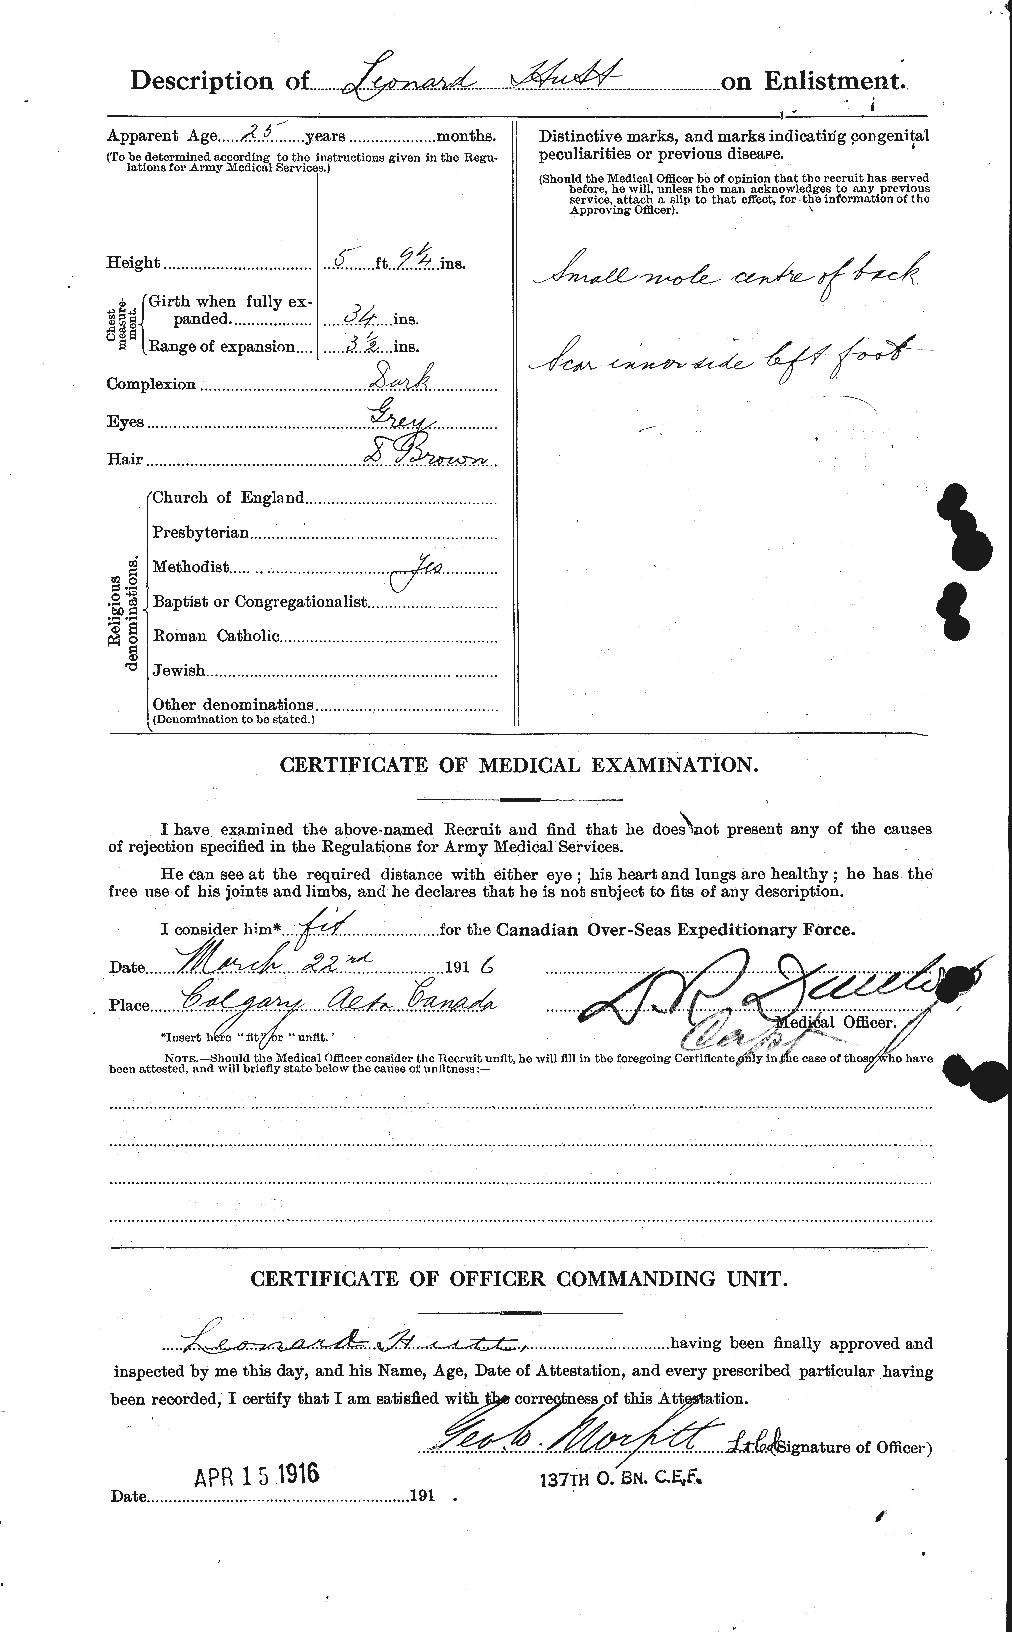 Dossiers du Personnel de la Première Guerre mondiale - CEC 411947b